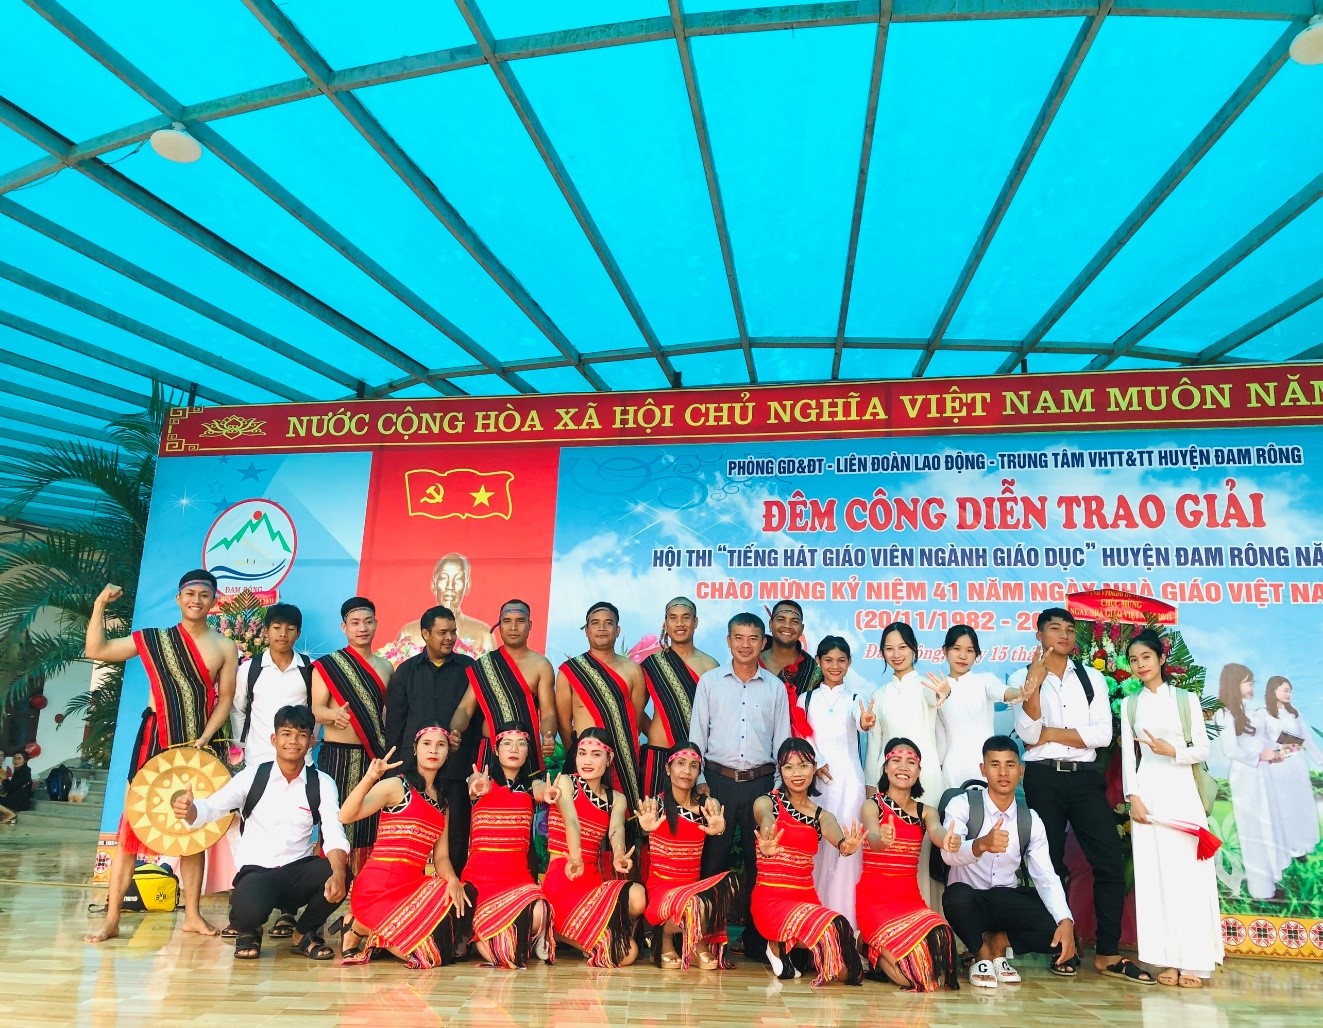 Trường THPT Đạ Tông tham gia hội thi "Tiếng hát giáo viên" ngành giáo dục huyện Đam Rông năm 2023